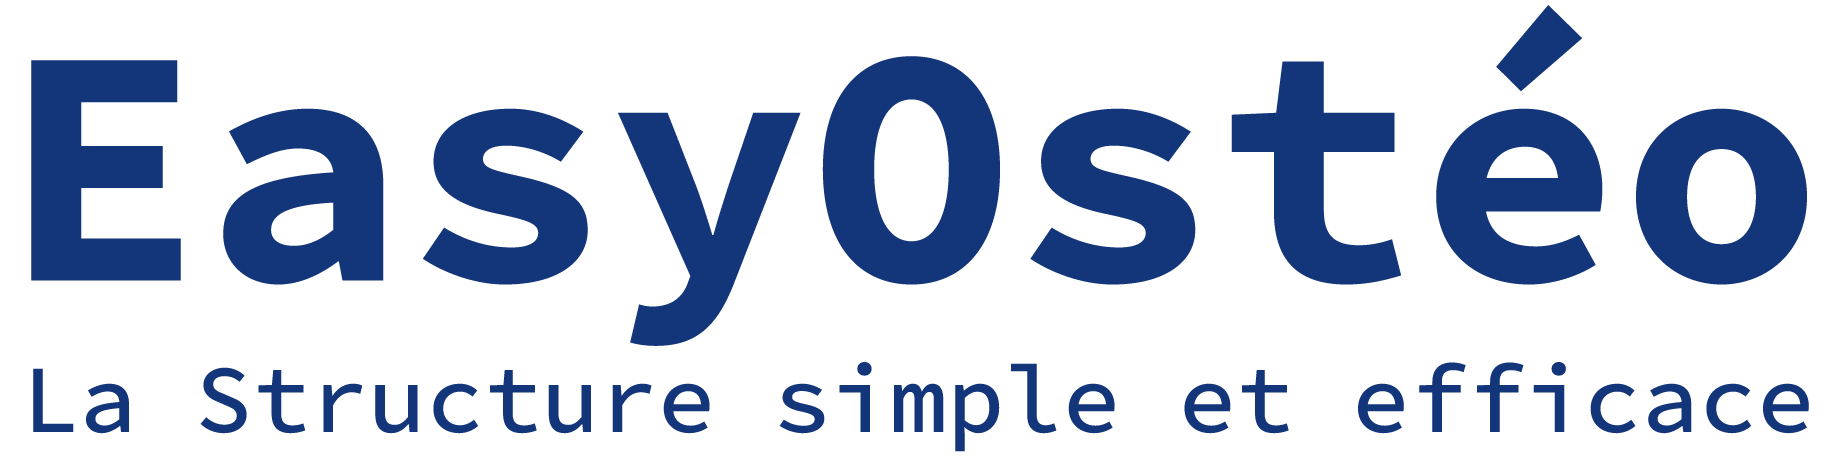 Logo de EasyOstéo